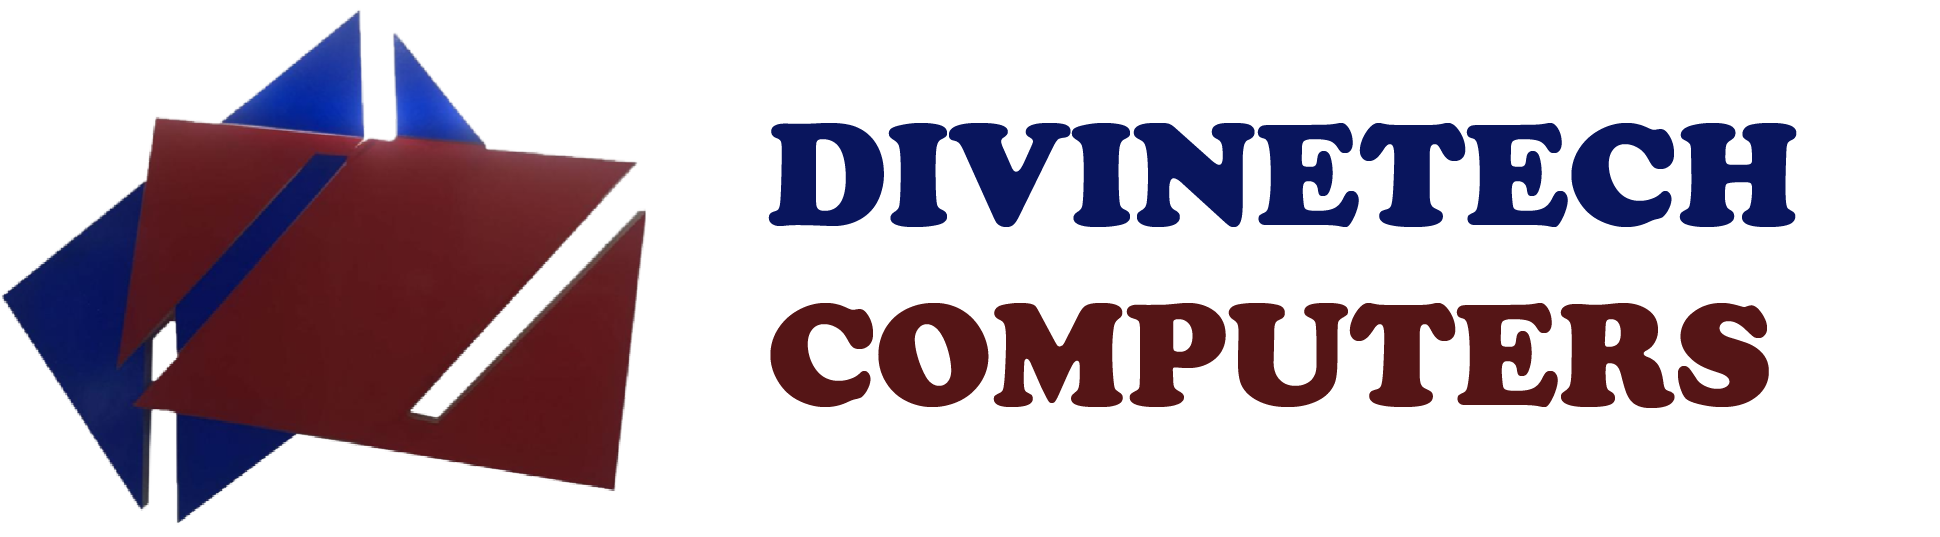 Divinetechcomputers